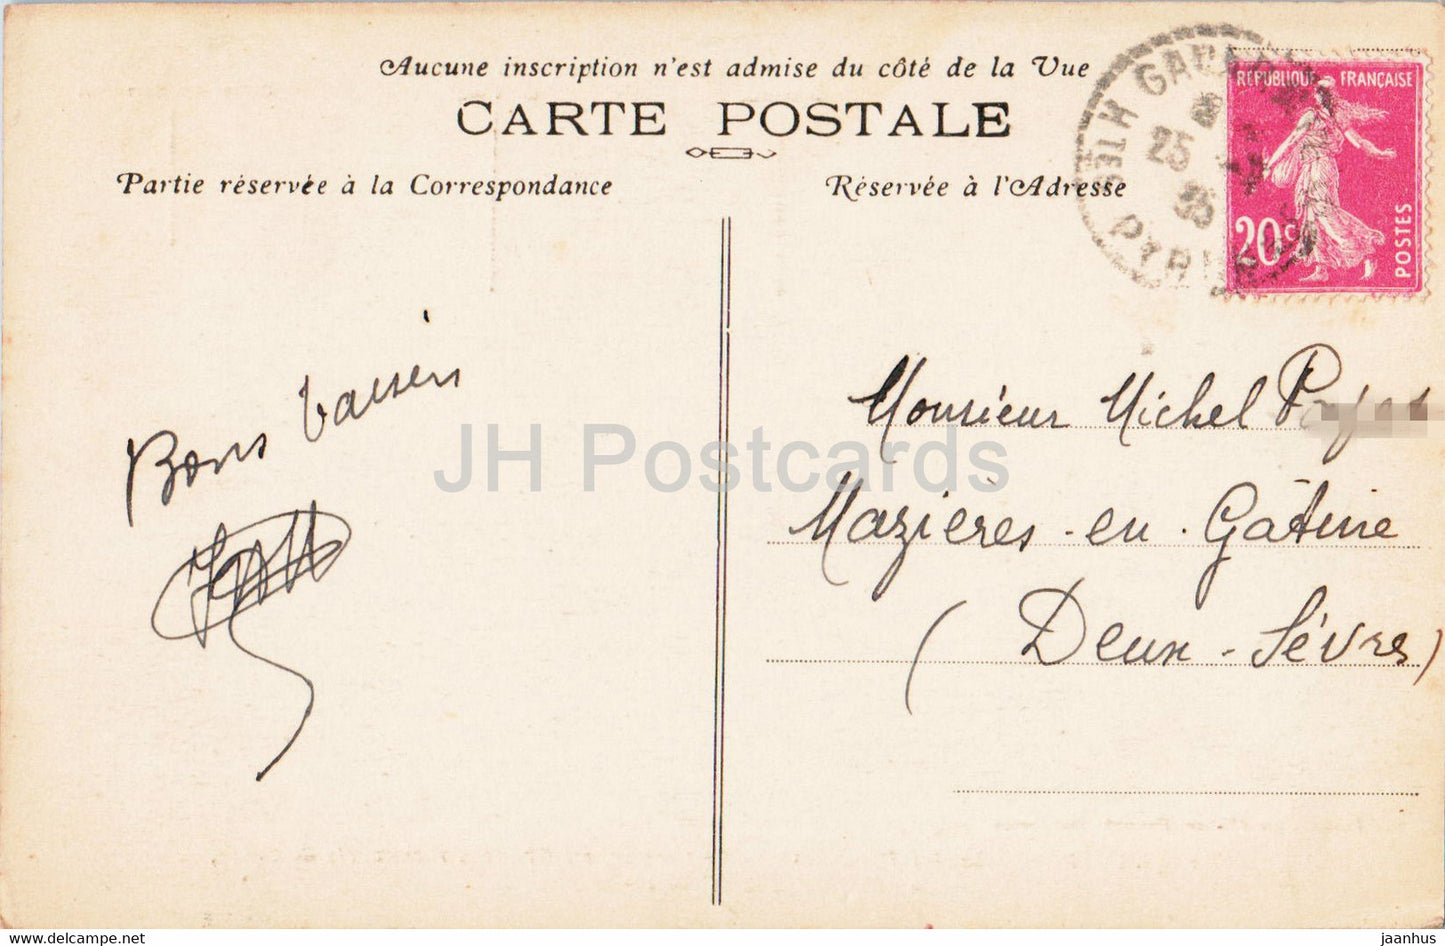 Gavarnie - Le Cirque ses Gradins recouverts de neige sa Cascade - 4 - alte Postkarte - 1935 - Frankreich - gebraucht